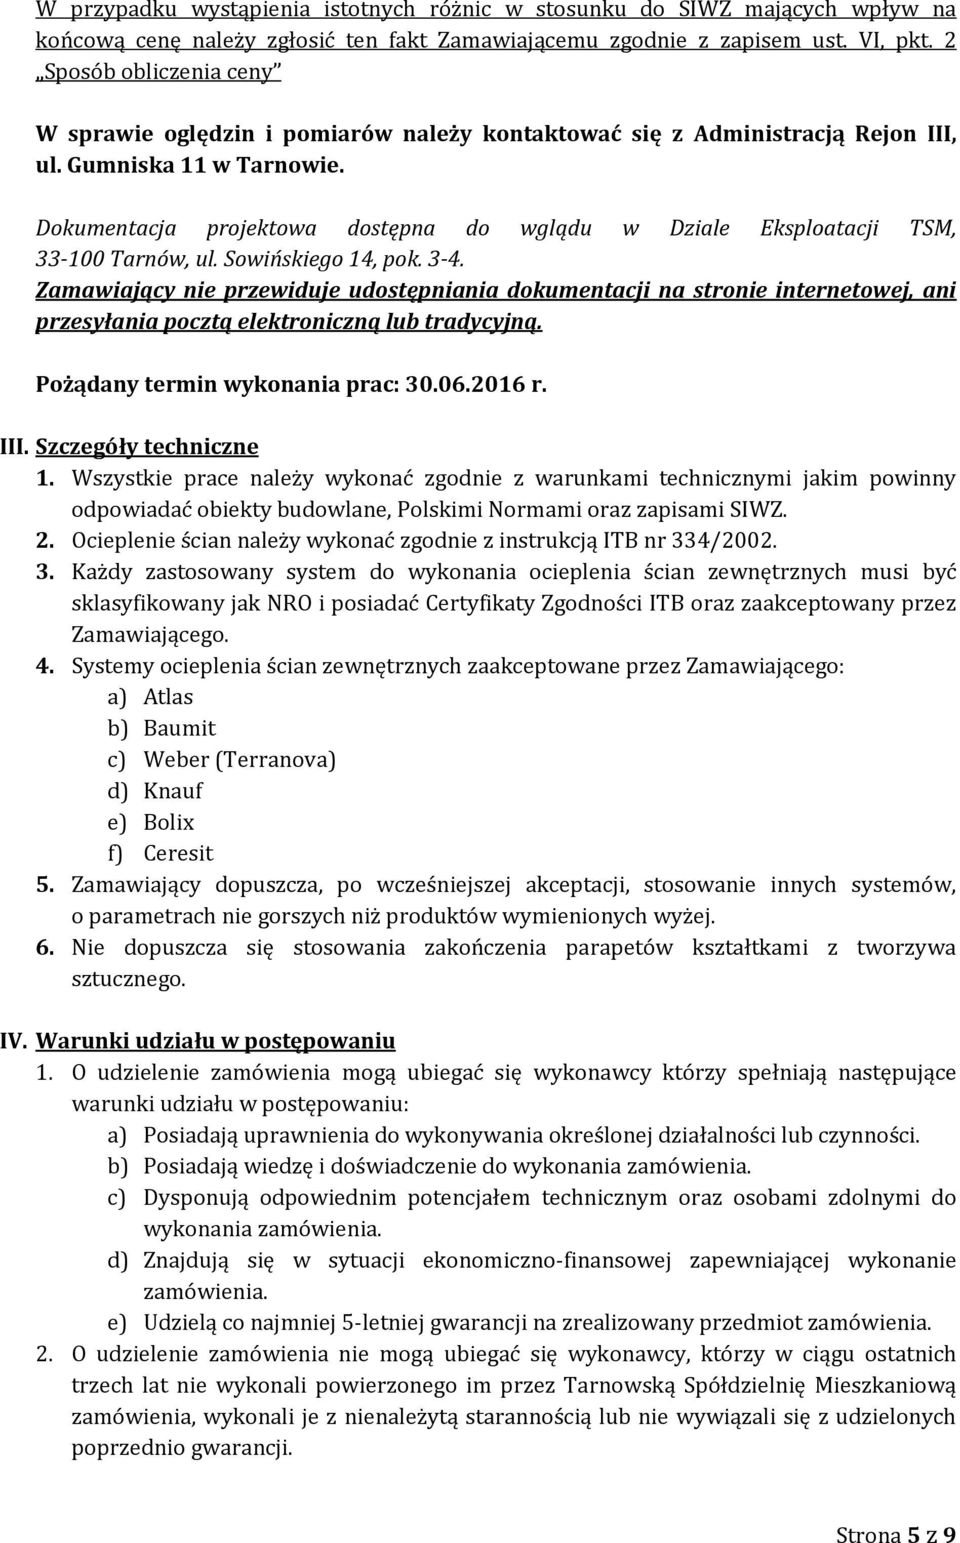 Dokumentacja projektowa dostępna do wglądu w Dziale Eksploatacji TSM, 33-100 Tarnów, ul. Sowińskiego 14, pok. 3-4.